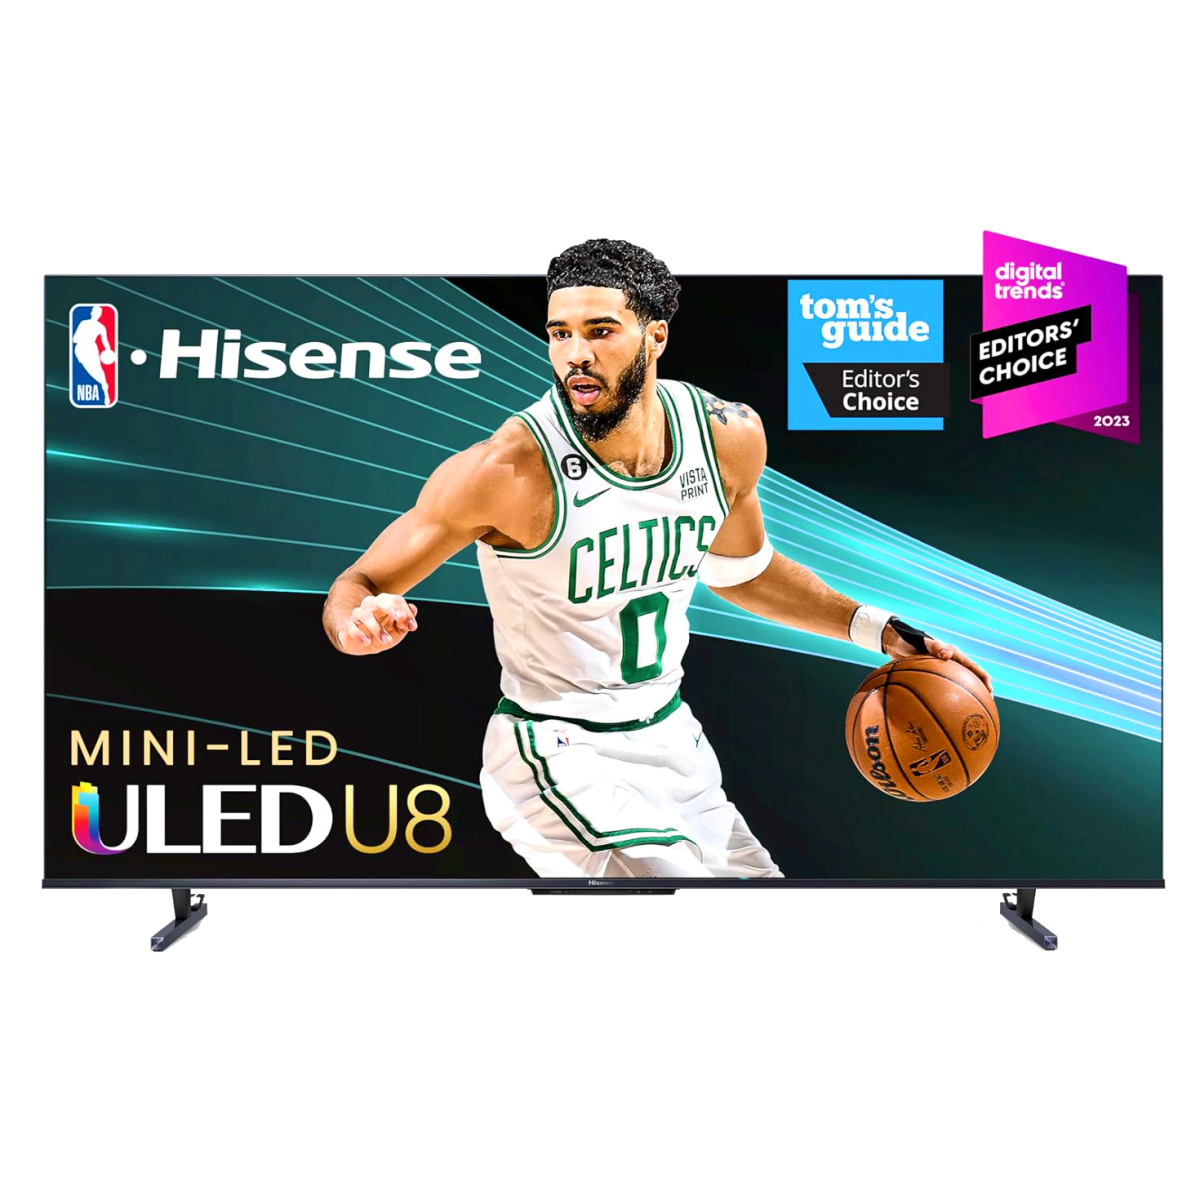 A Hisense U8K ULED 4K TV showcasing the NBA